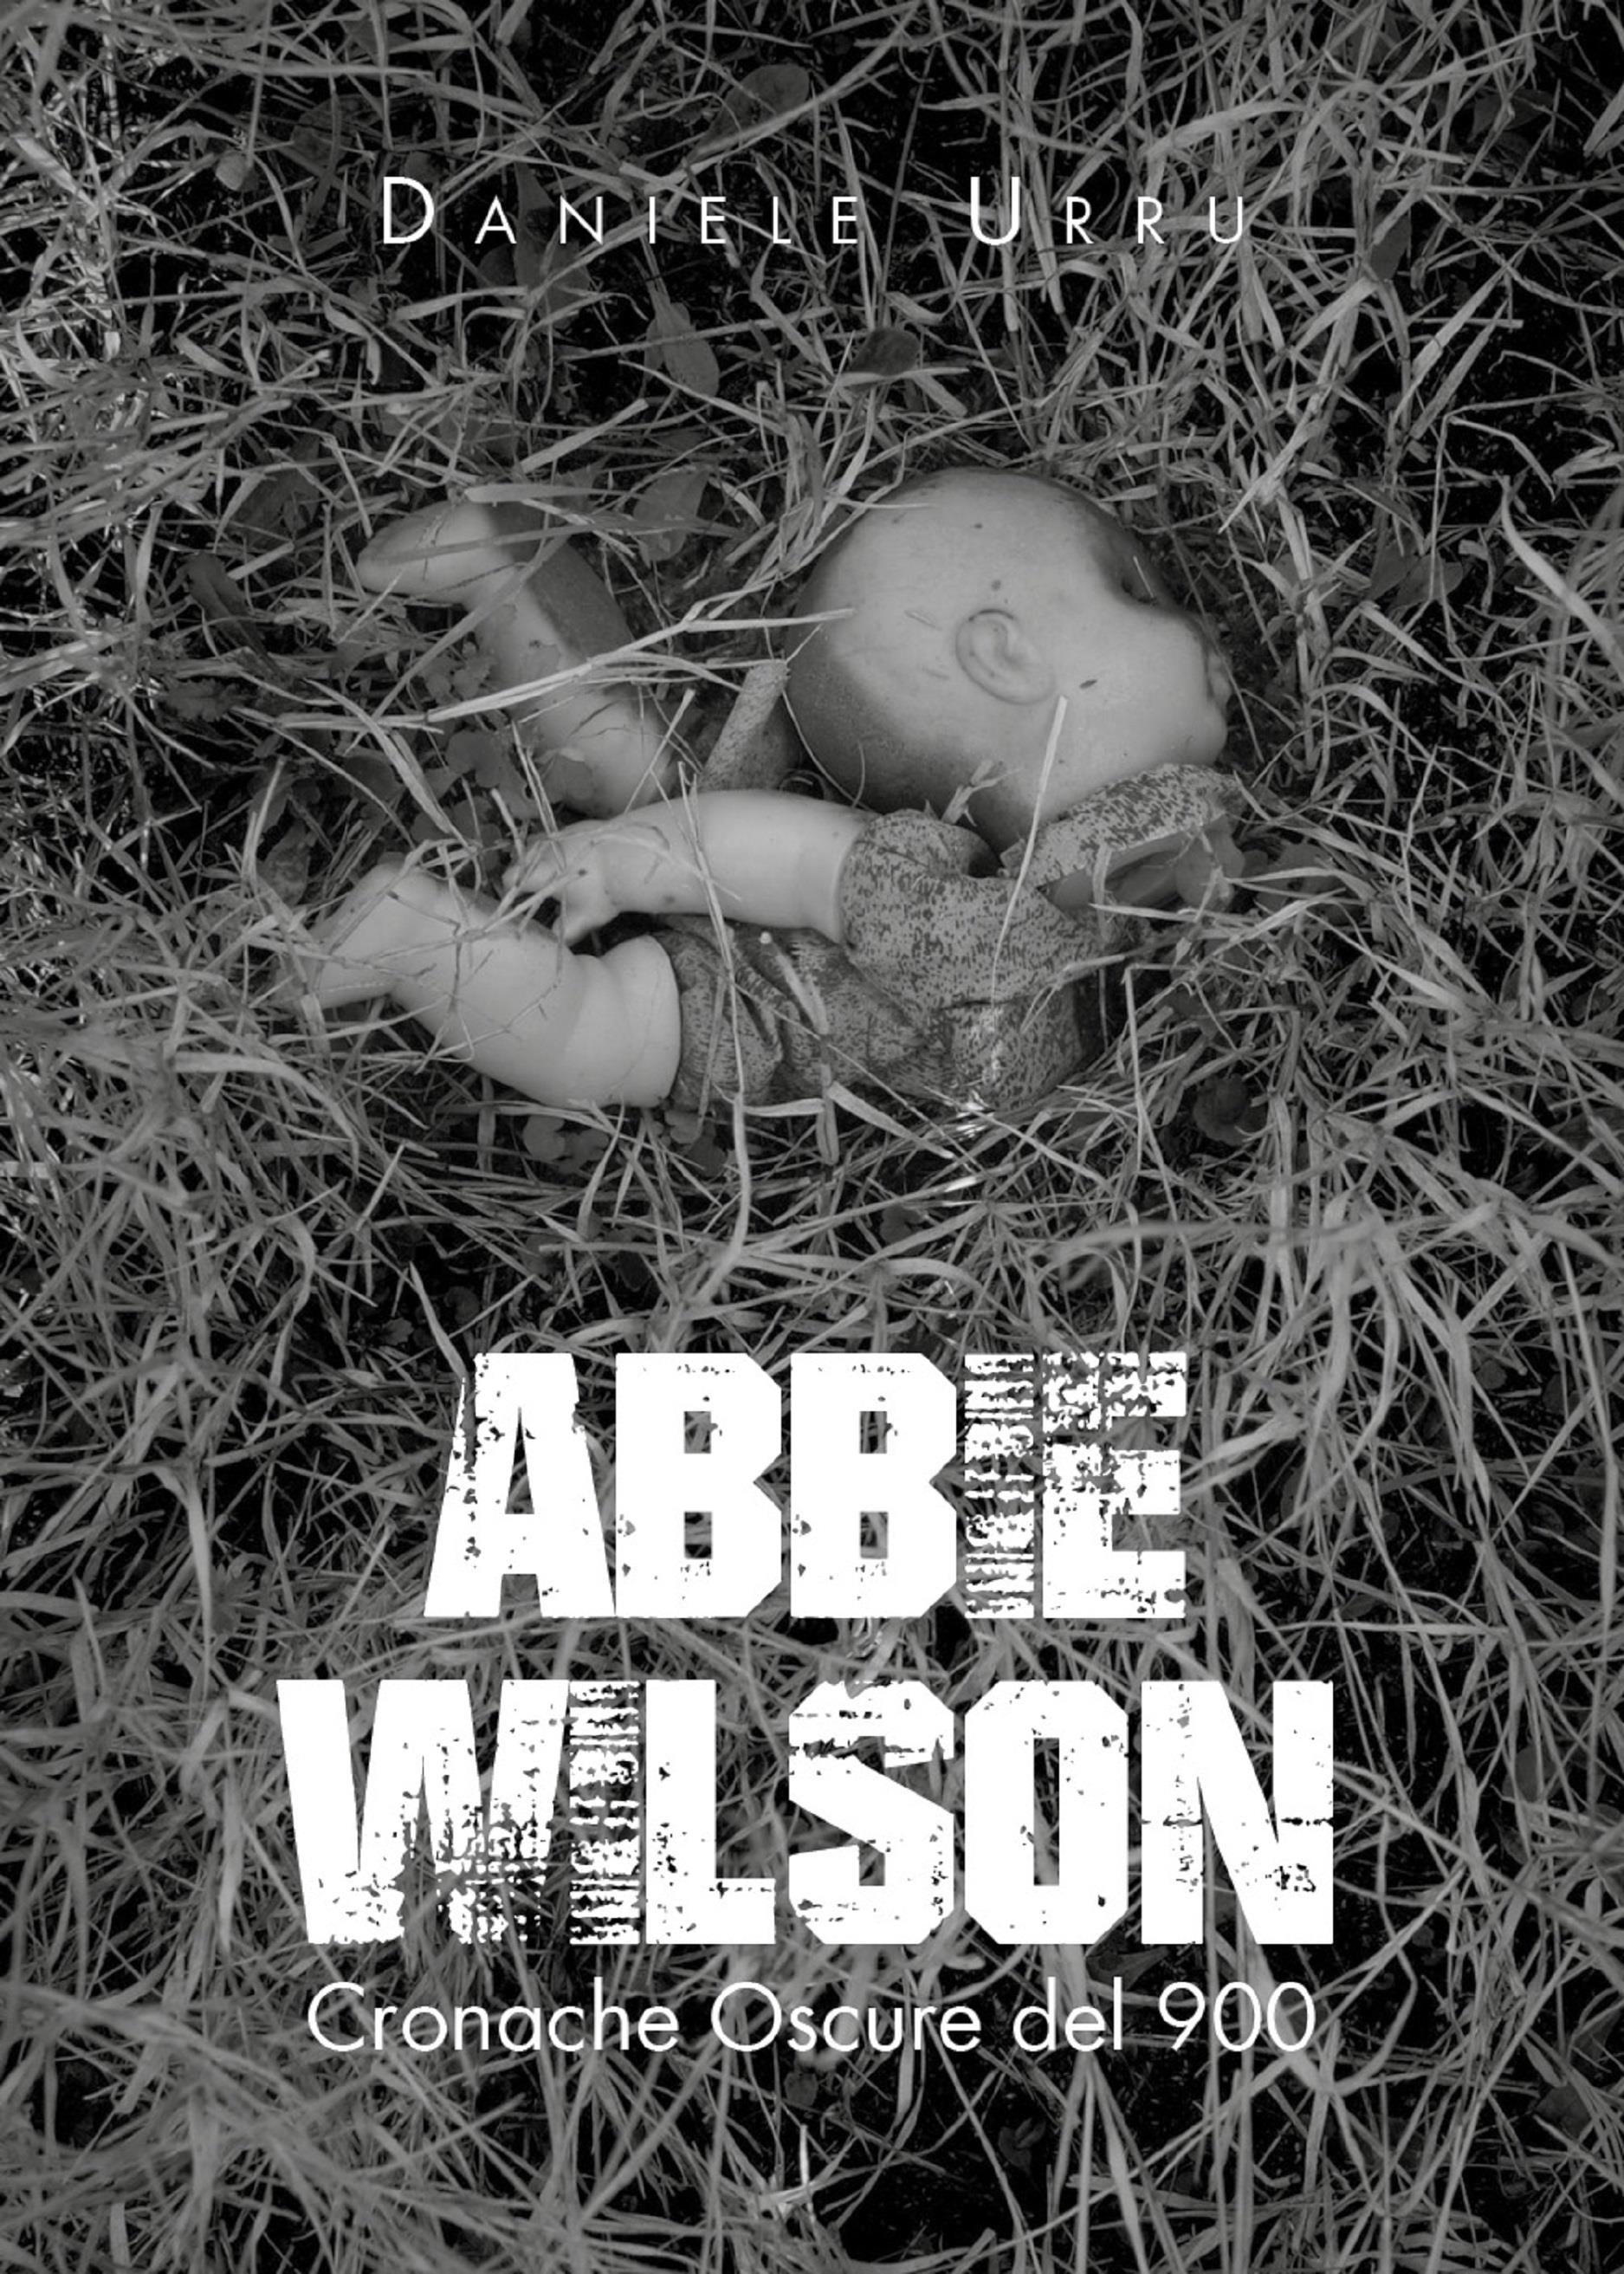 Abbie Wilson - Cronache Oscure del 900